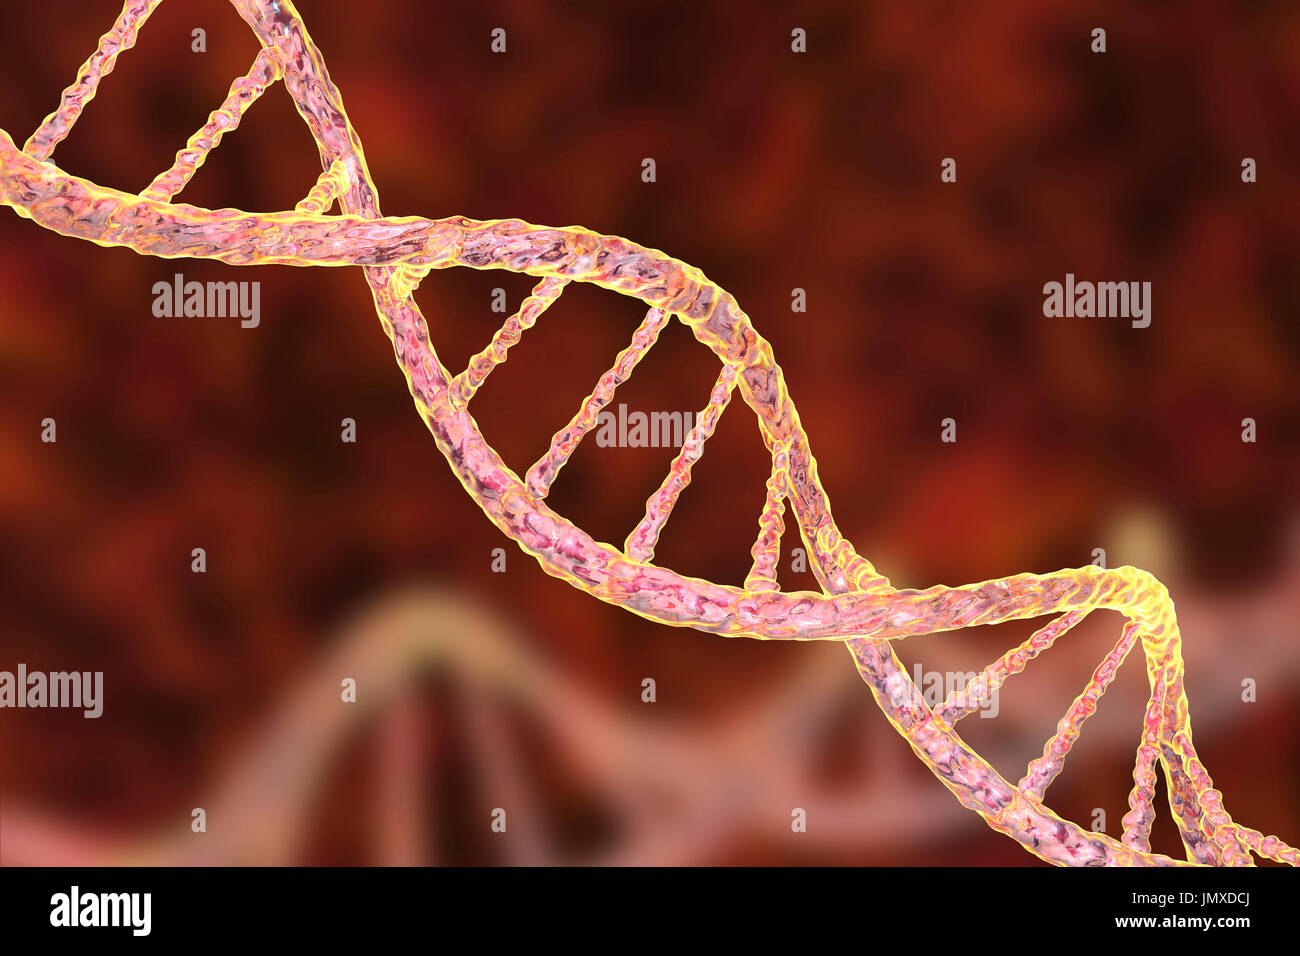 Molecola di DNA, computer grafica. La molecola di DNA (acido desossiribonucleico) è costituito da una lunga doppia elica di fosfati e di zuccheri, collegate da coppie di basi nucleotidiche (palle e stecche). Queste coppie di base di nucleotide formano i gradini della scala a spirale visto qui. La sequenza di queste coppie di base formano il codice genetico che è alla base di tutte le forme di vita sulla terra. Un individuo sequenza genetica controlla la loro crescita e il loro sviluppo, e si è passati ai loro figli. Variazioni nella sequenza genetica nel corso di milioni di anni di evoluzione hanno prodotto la diversità della vita sulla terra. Foto Stock